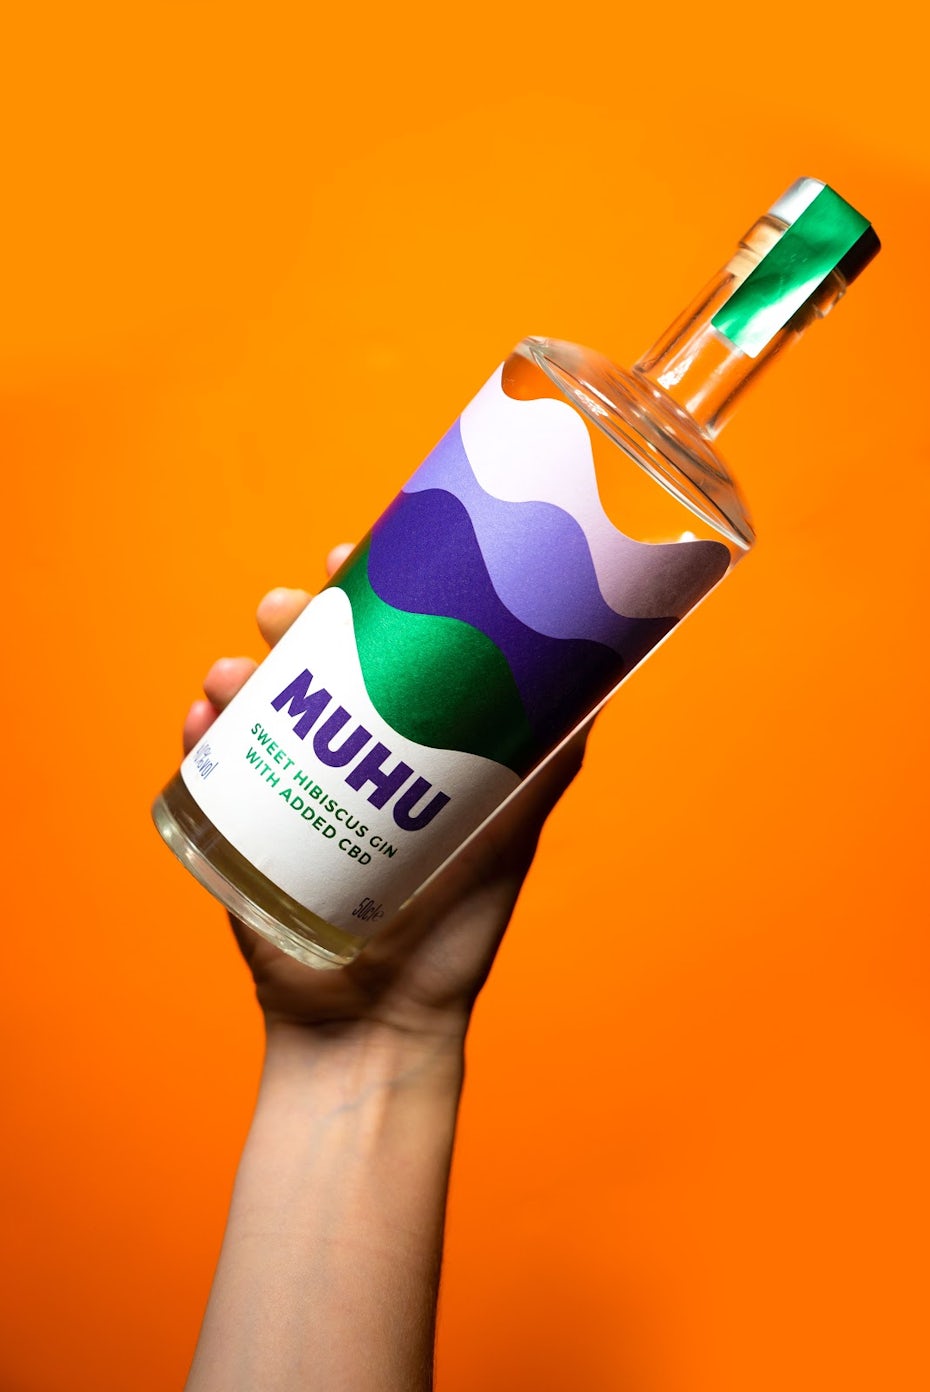 MUHU label design on orange background